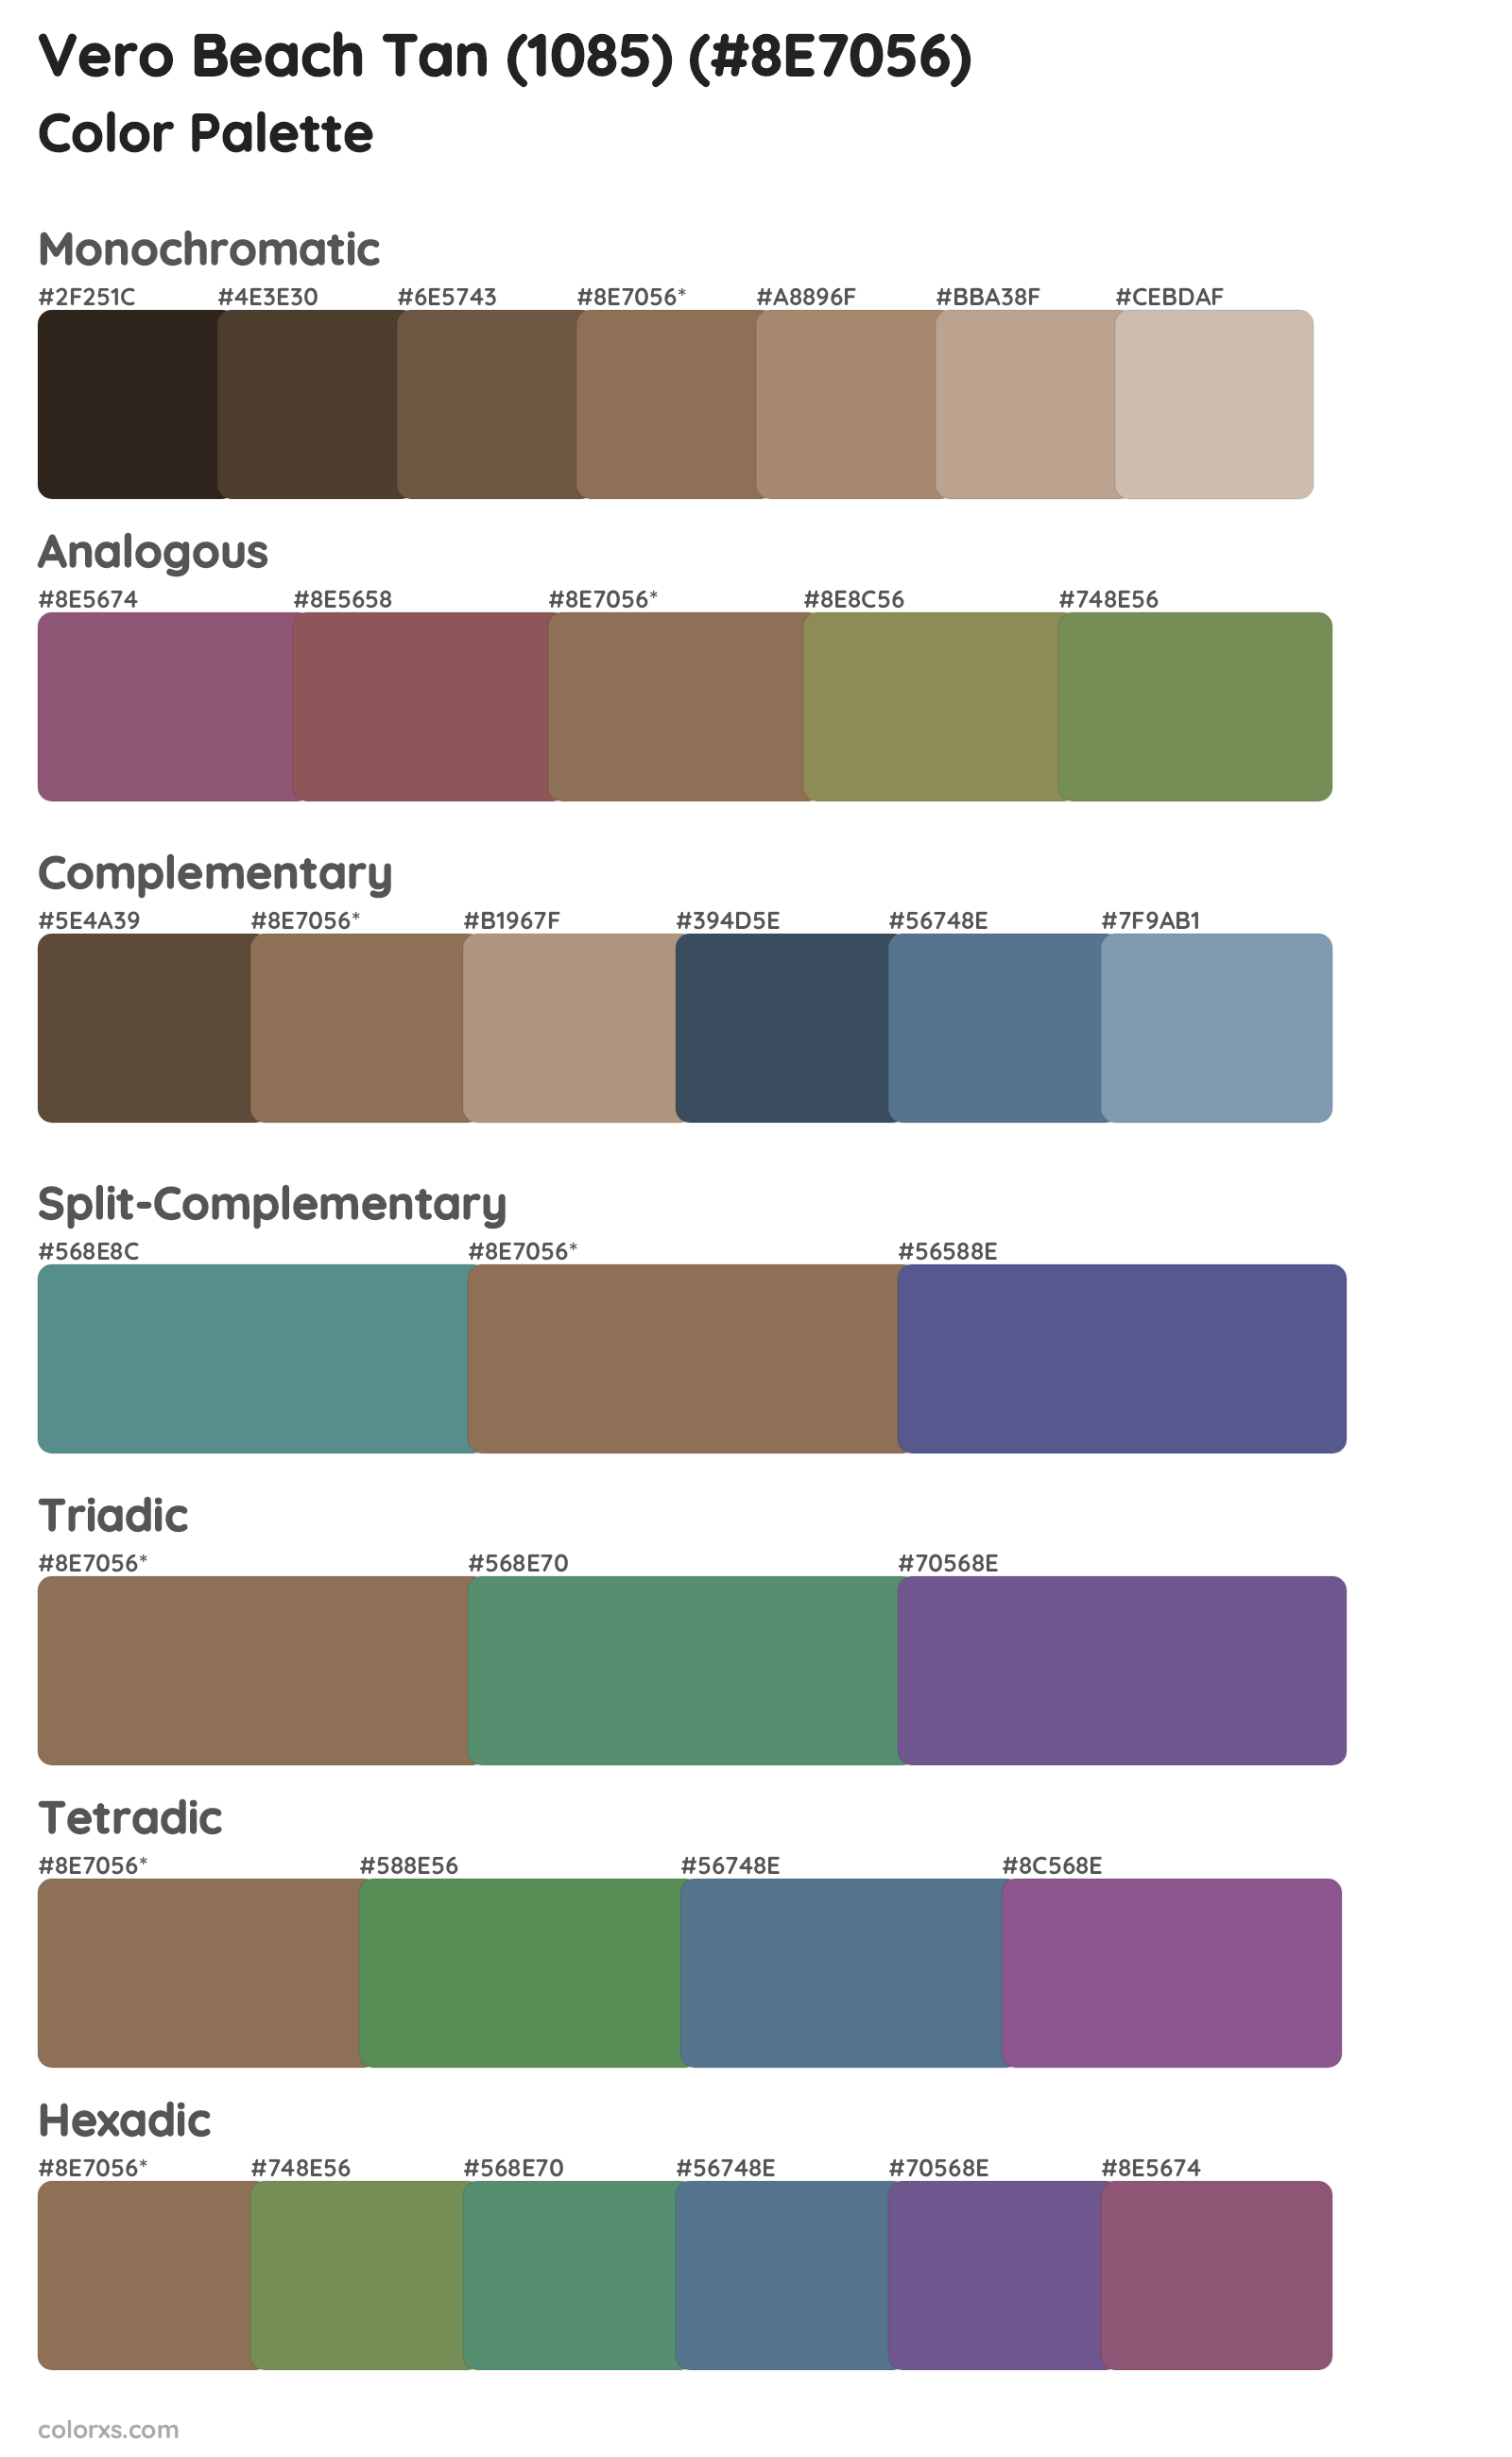 Vero Beach Tan (1085) Color Scheme Palettes